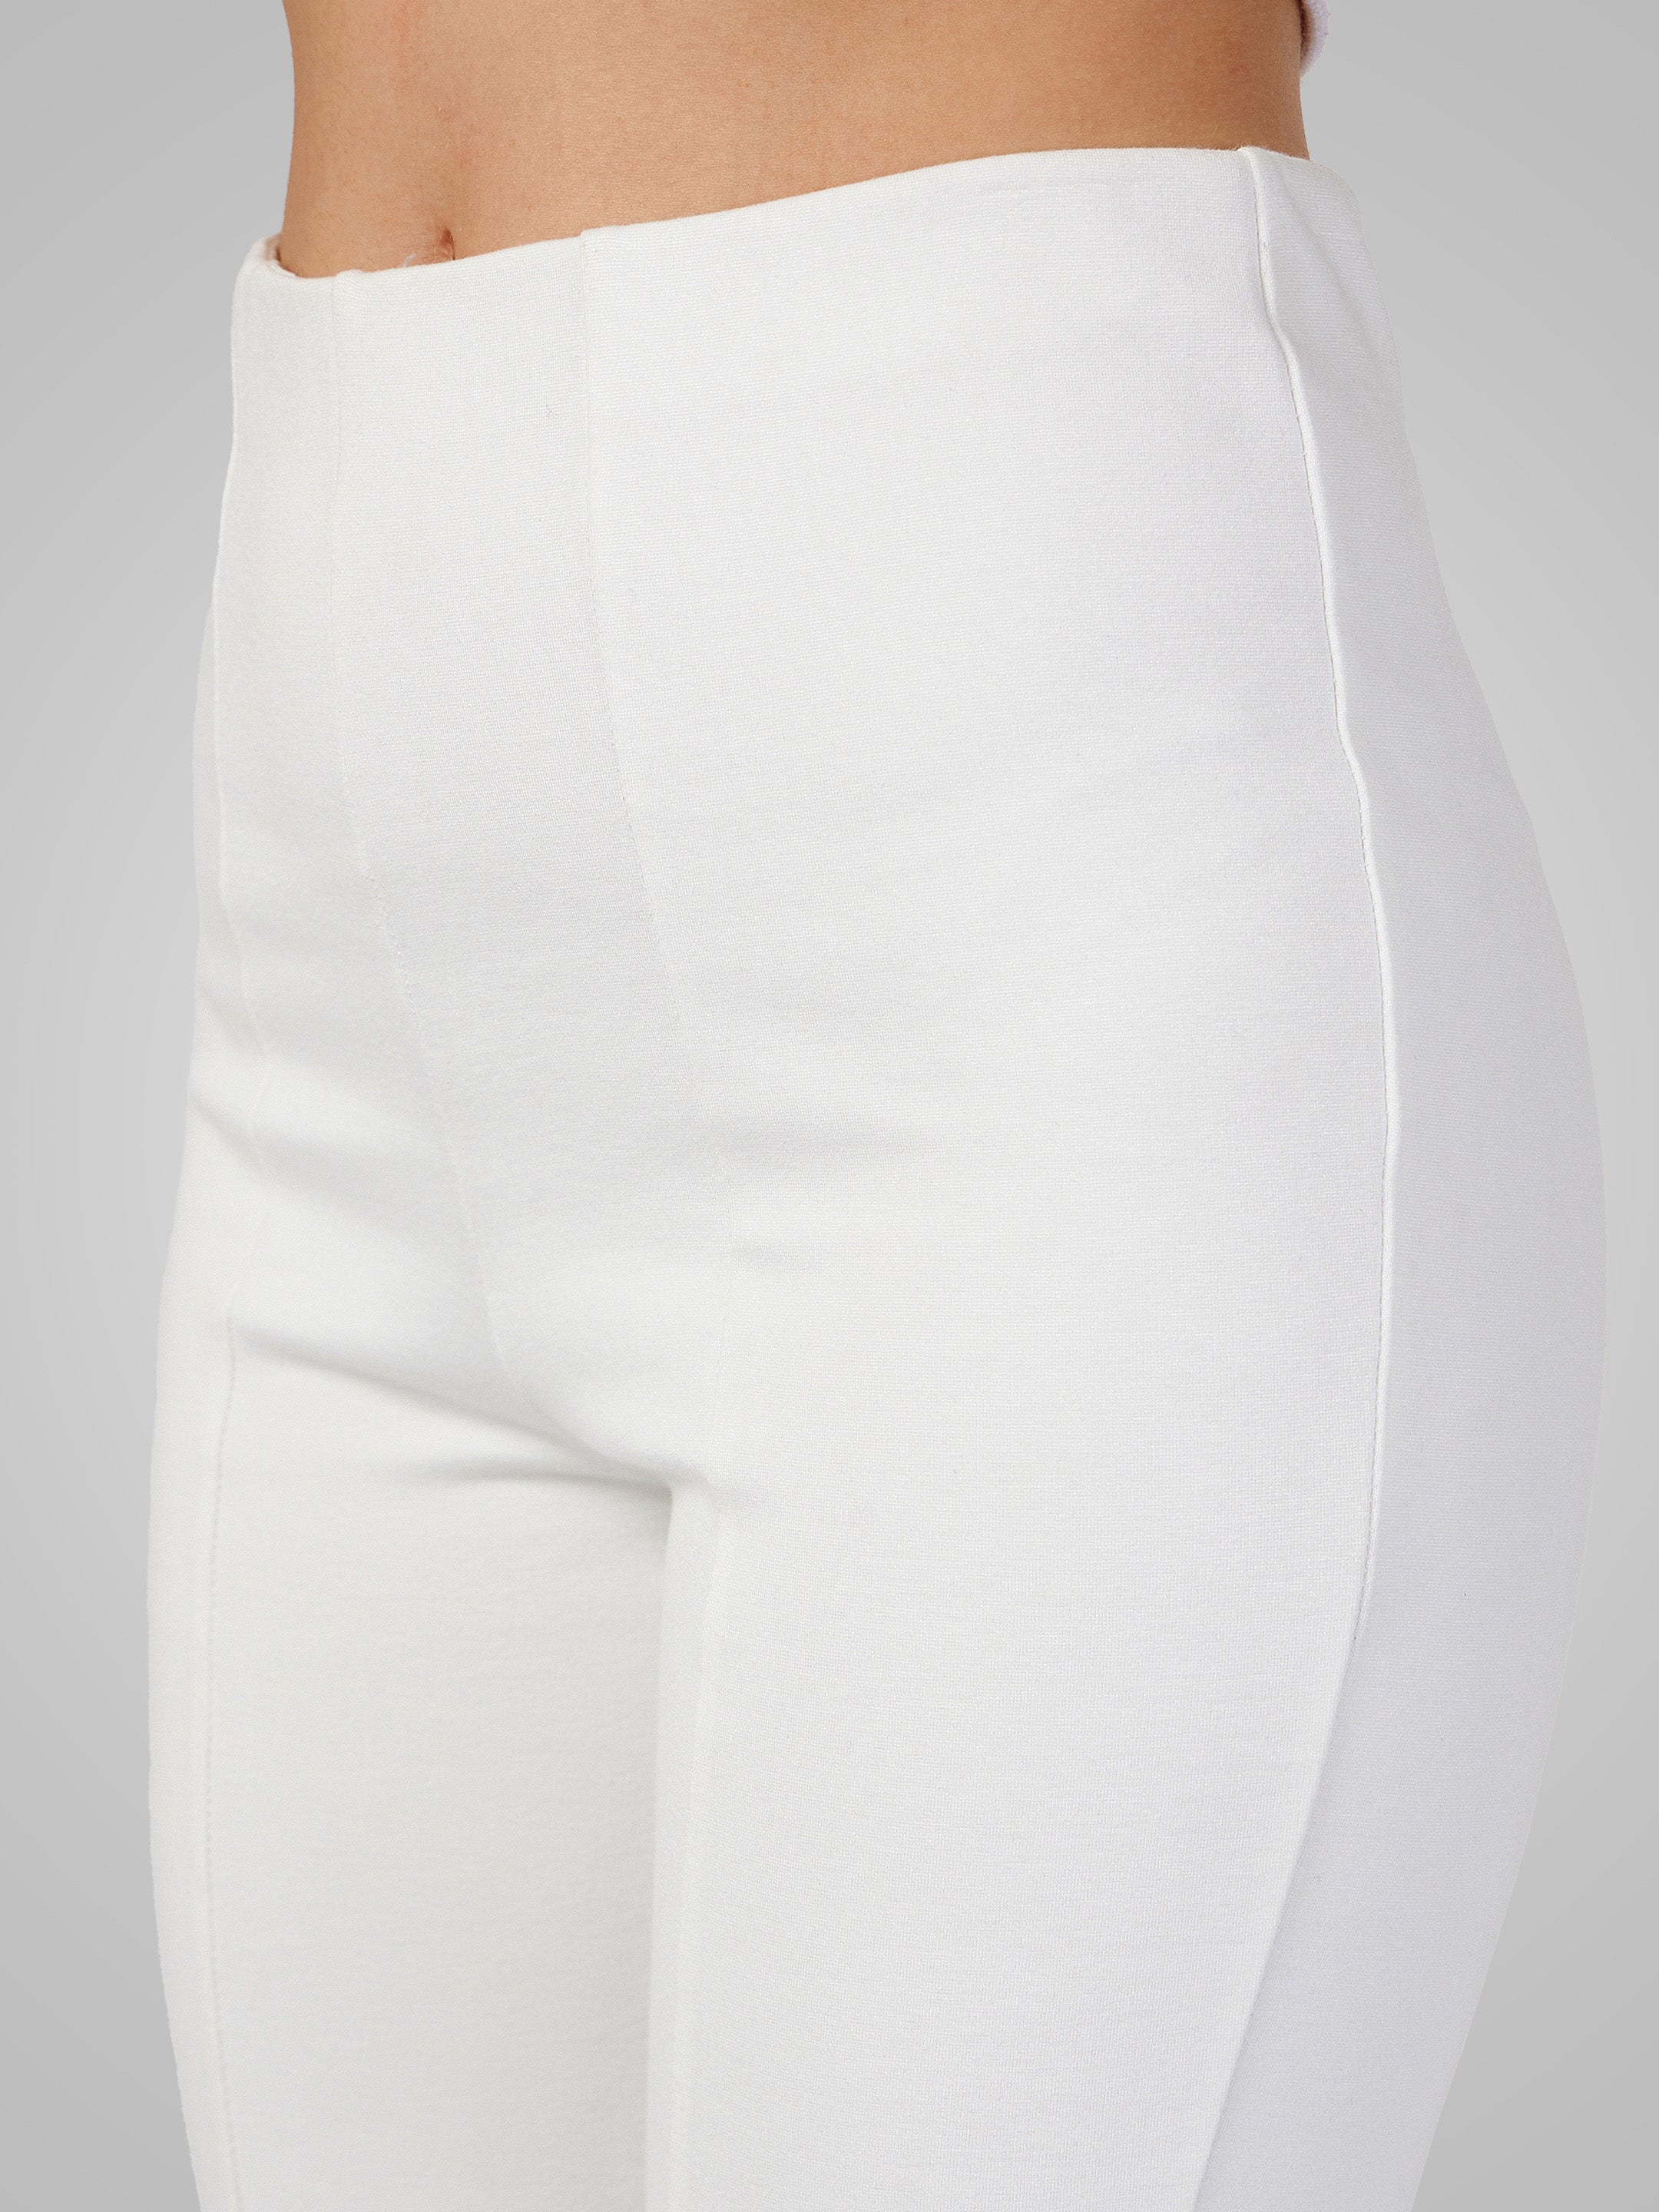 Women's White Roma Front Slit Bell Bottom Pants - Lyush